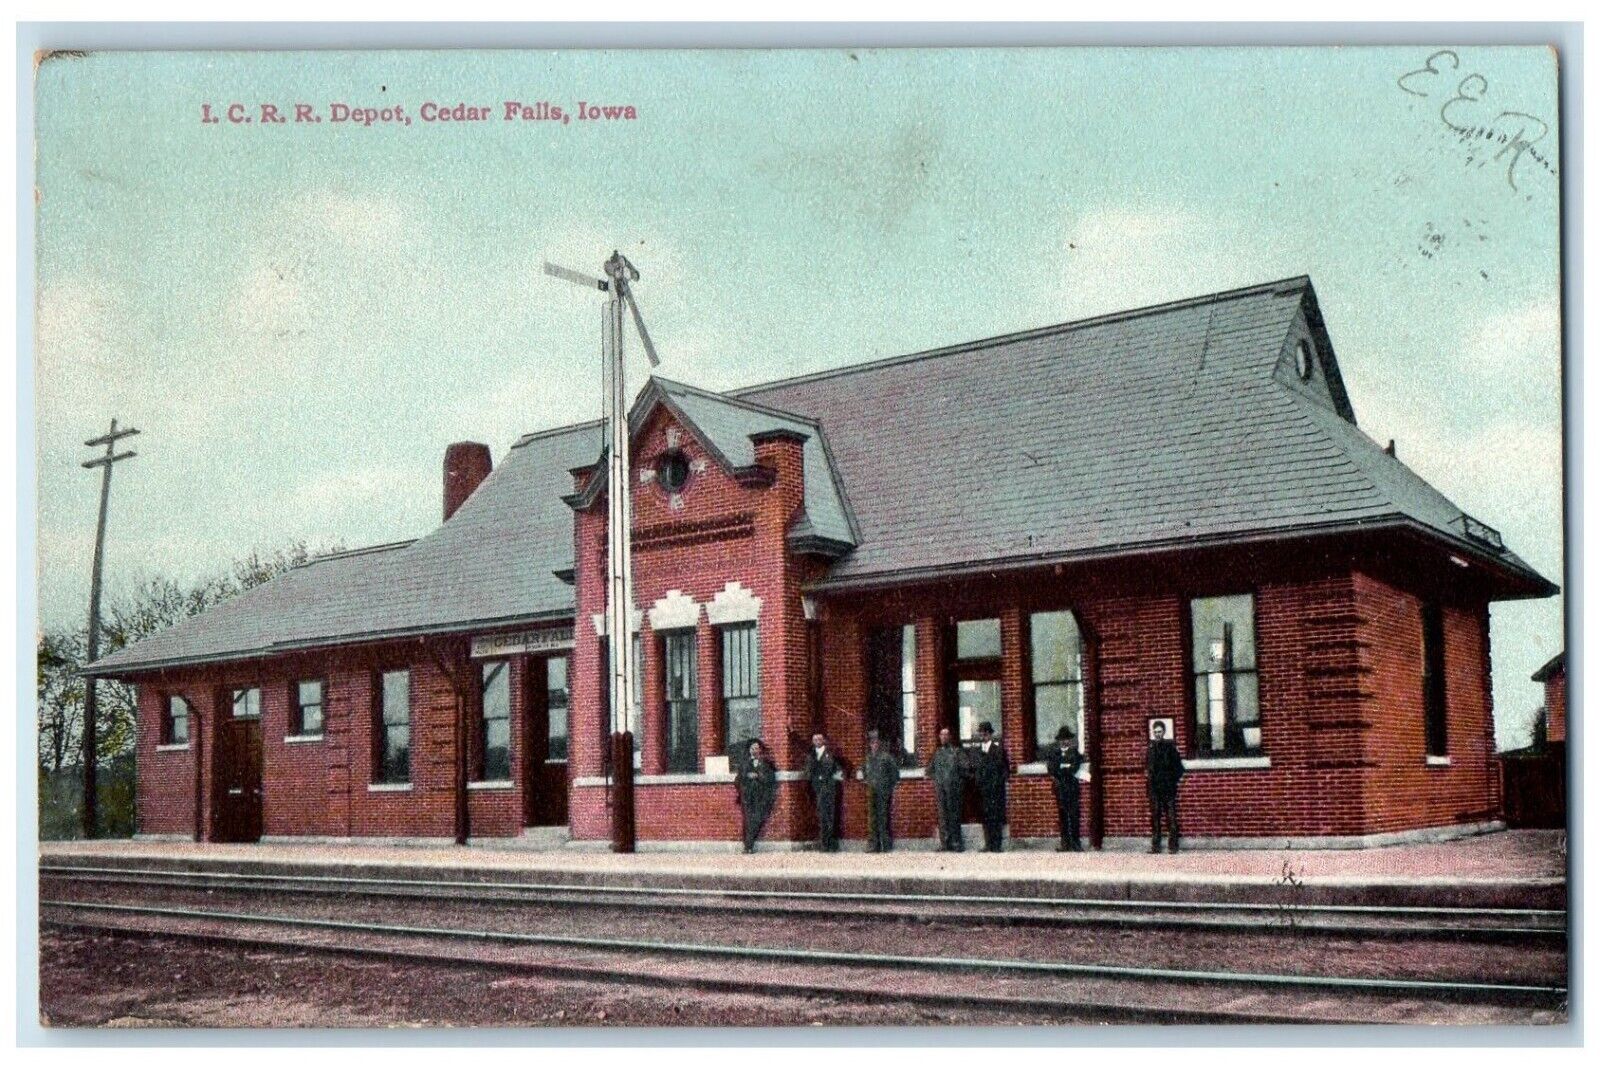 1908 I. C. R. R. Depot Train Station Railroad Cedar Falls Iowa IA Postcard